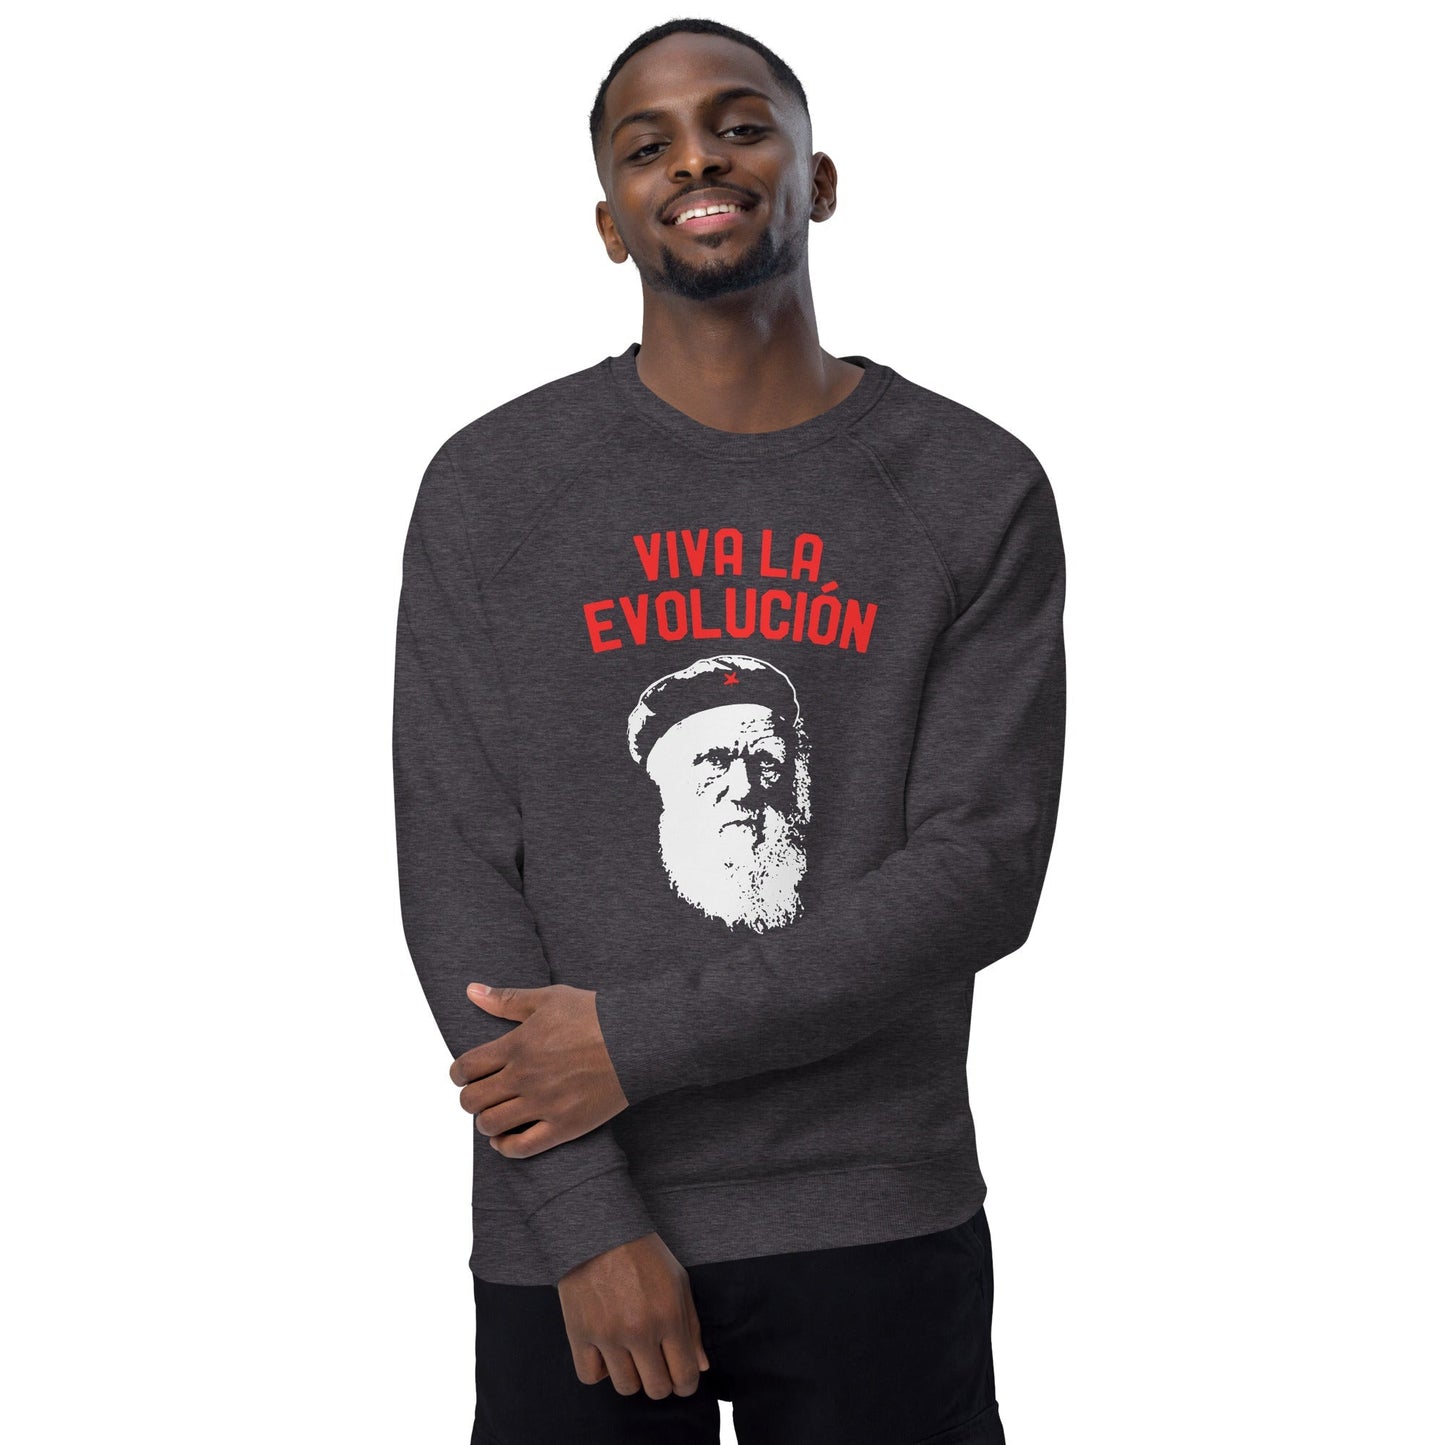 Darwin - Viva la Evolucion - Eco Sweatshirt